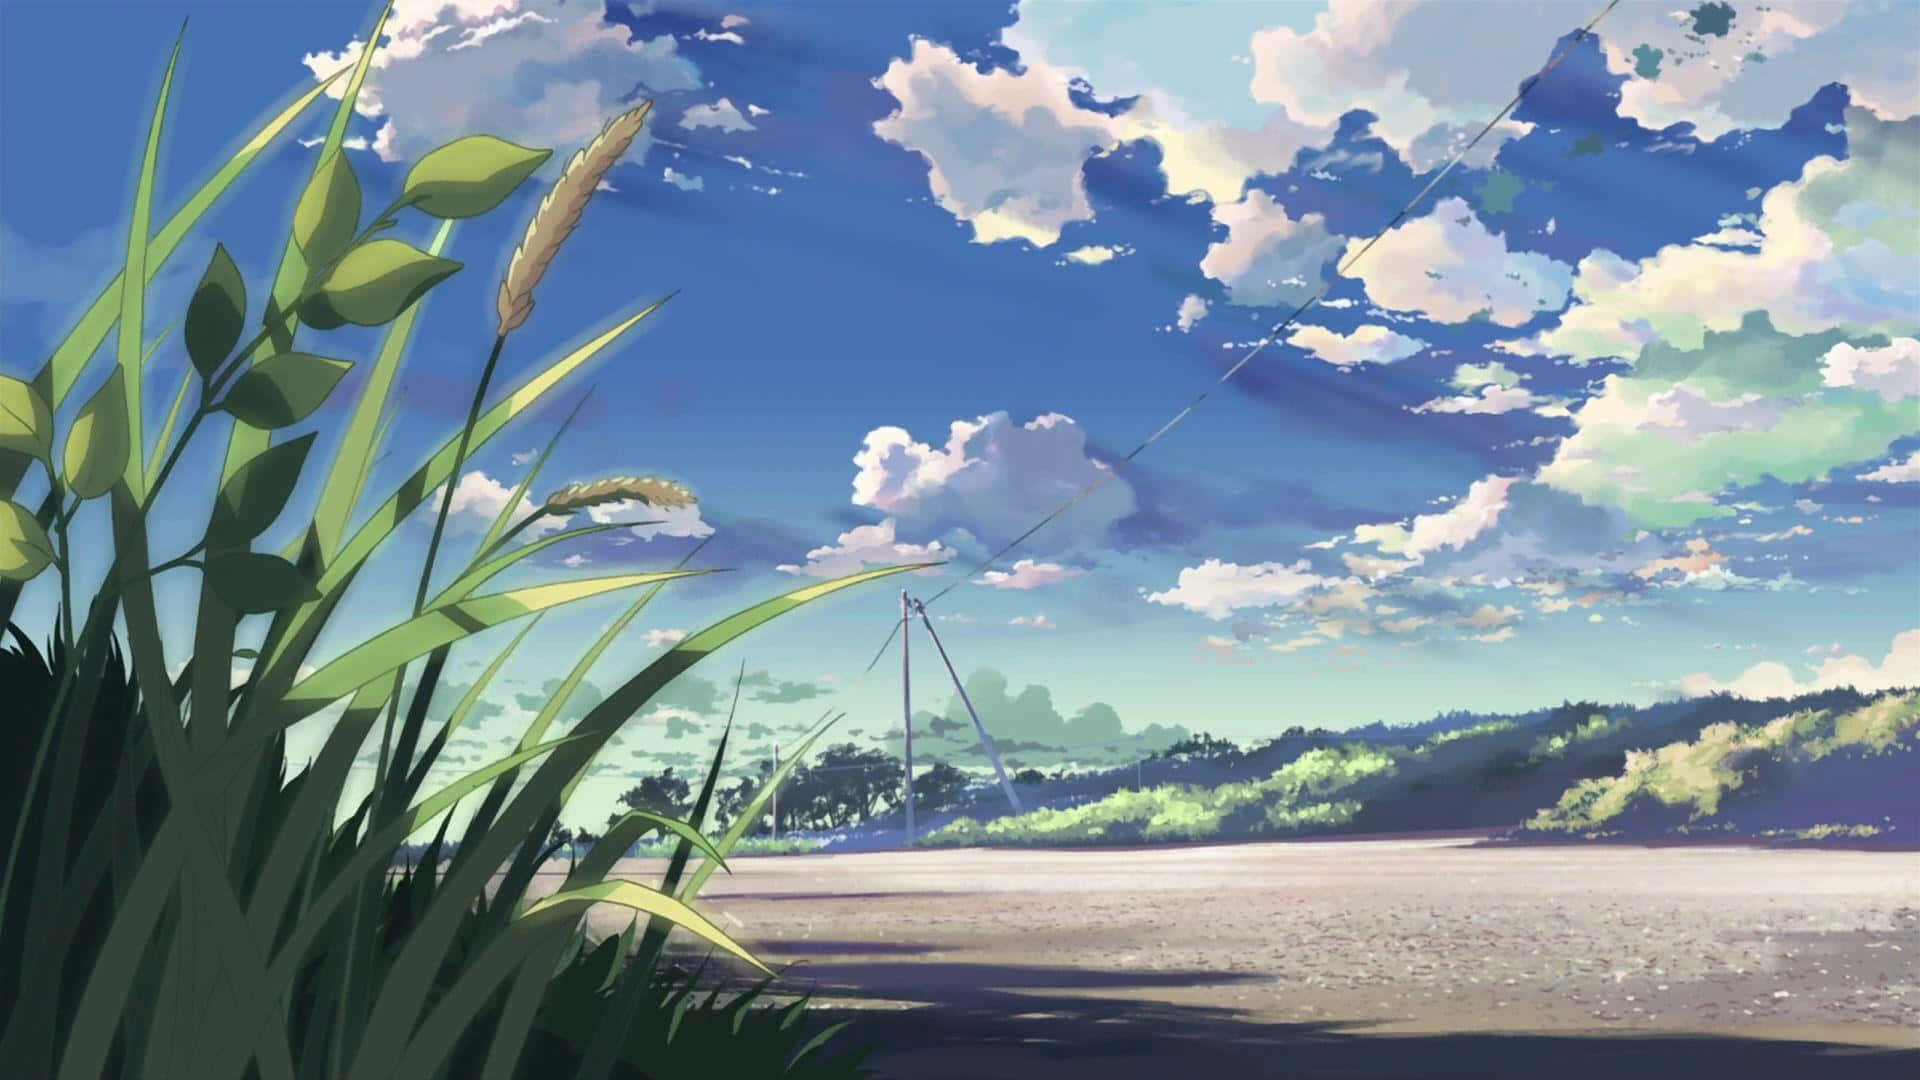 Aesthetic Anime Background 1920 x 1080 Background